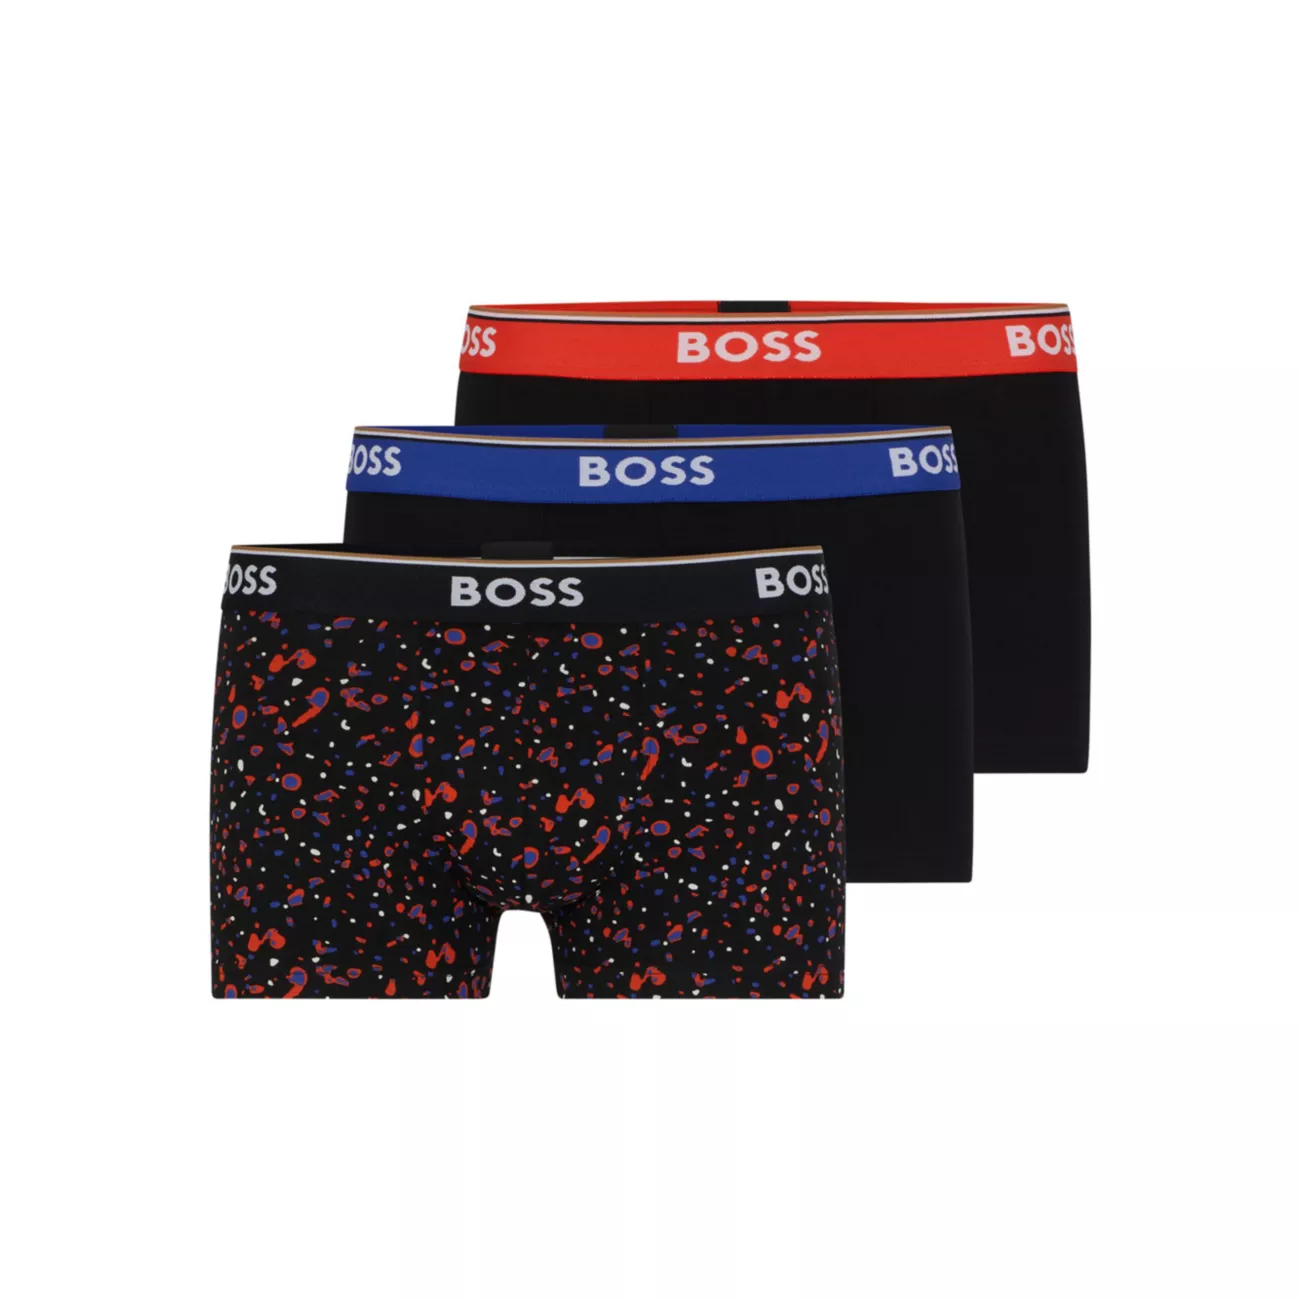 Тройная упаковка плавок из эластичного хлопка с поясами с логотипом BOSS